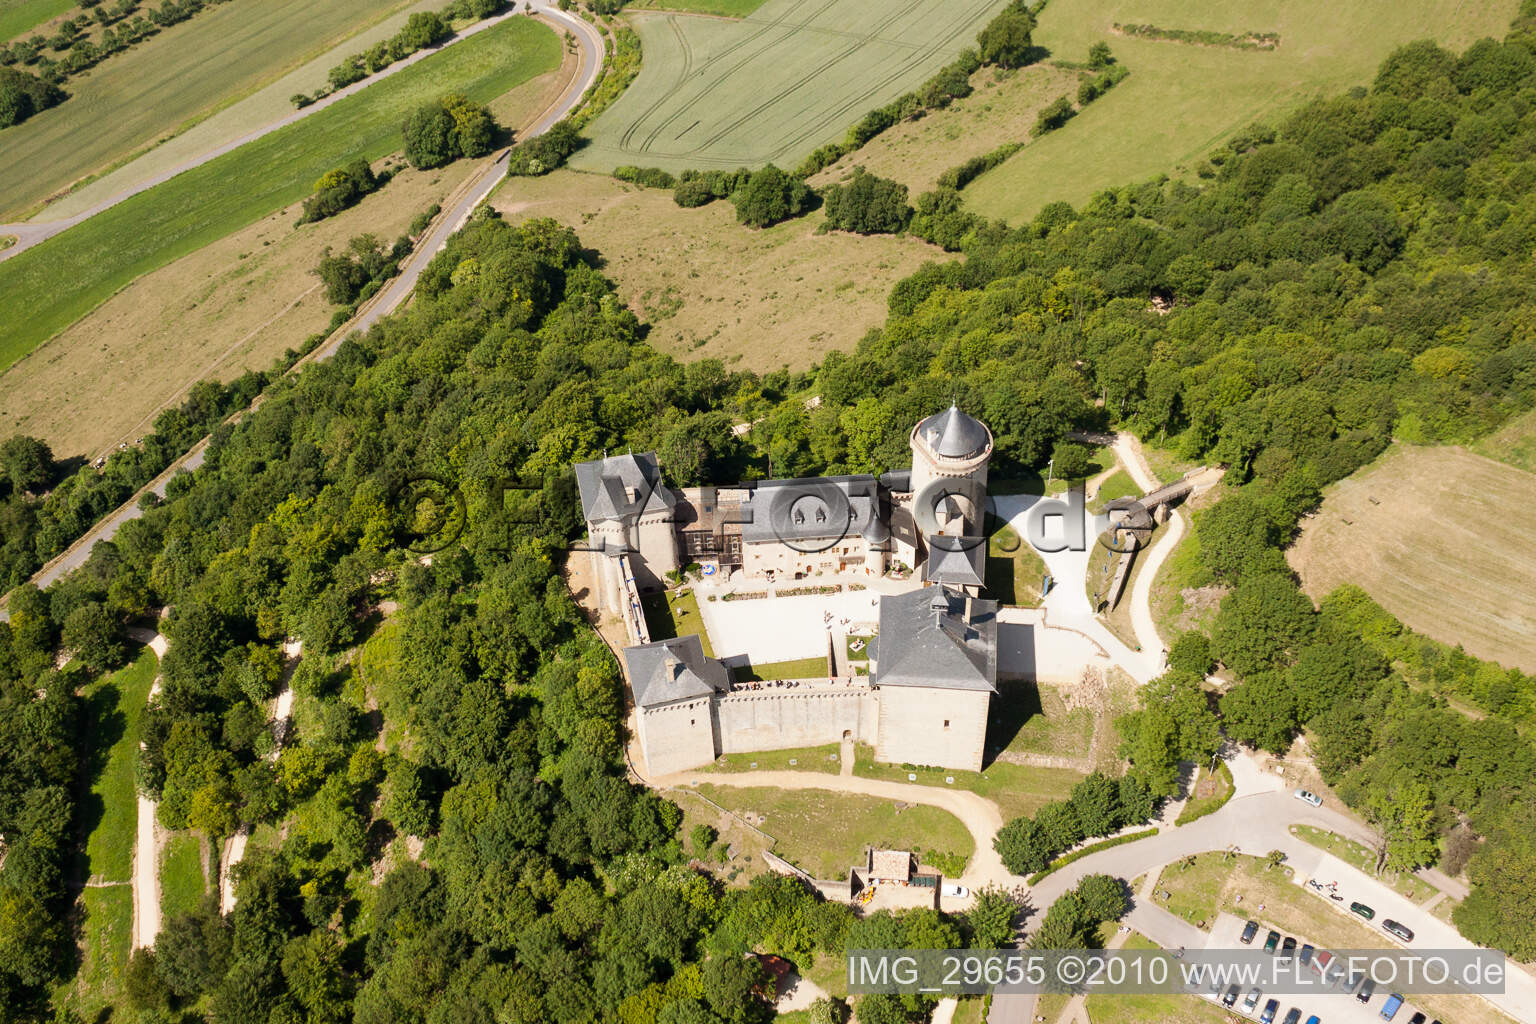 Château Mensberg à Manderen dans le département Moselle, France hors des airs